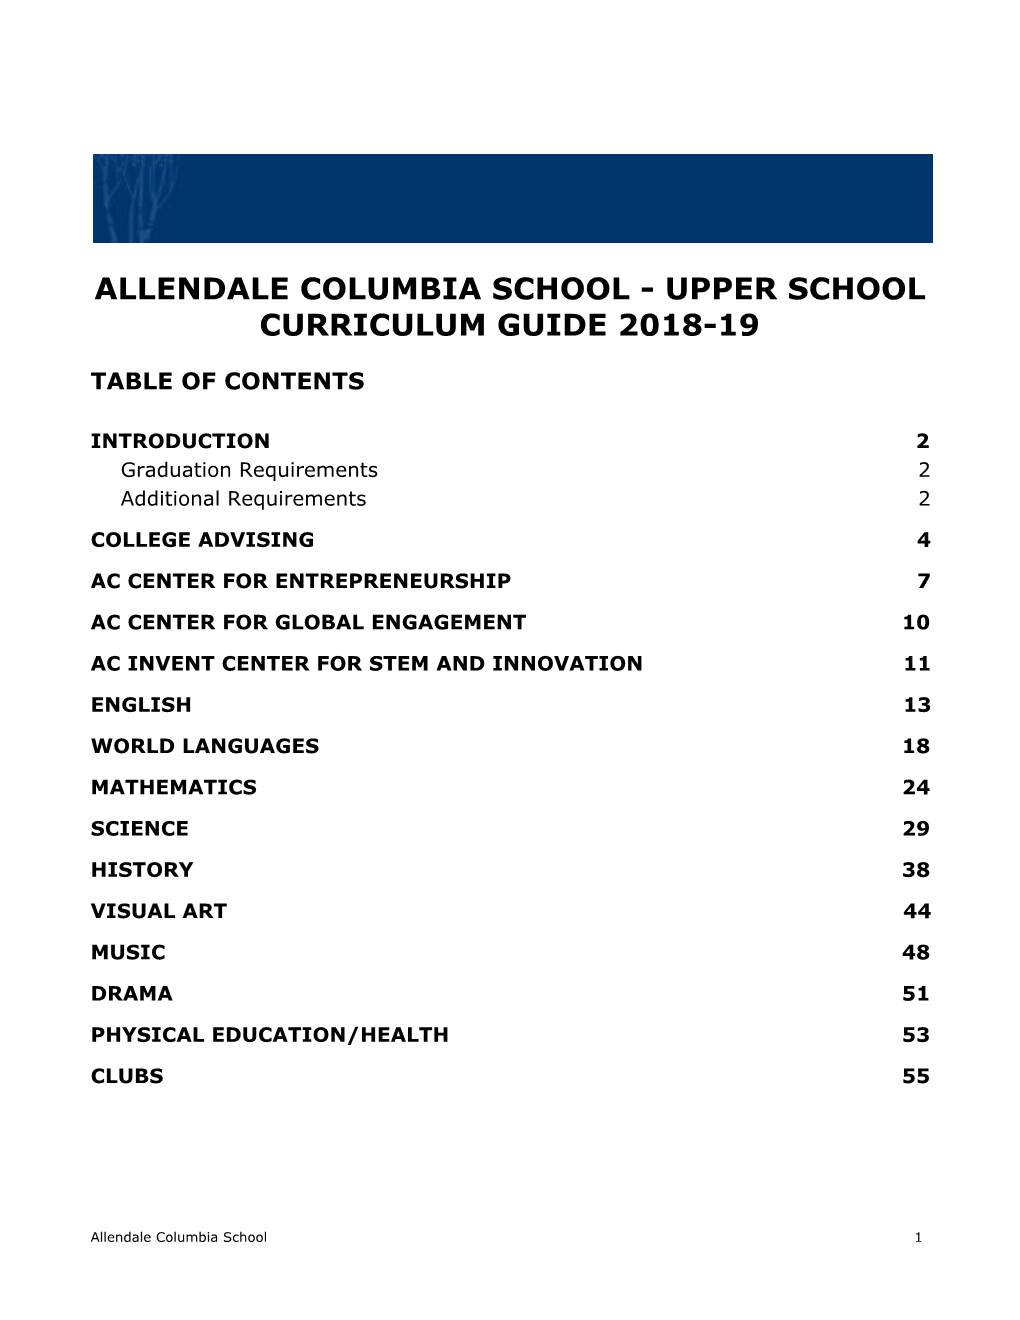 Upper School Curriculum Guide 2018-19